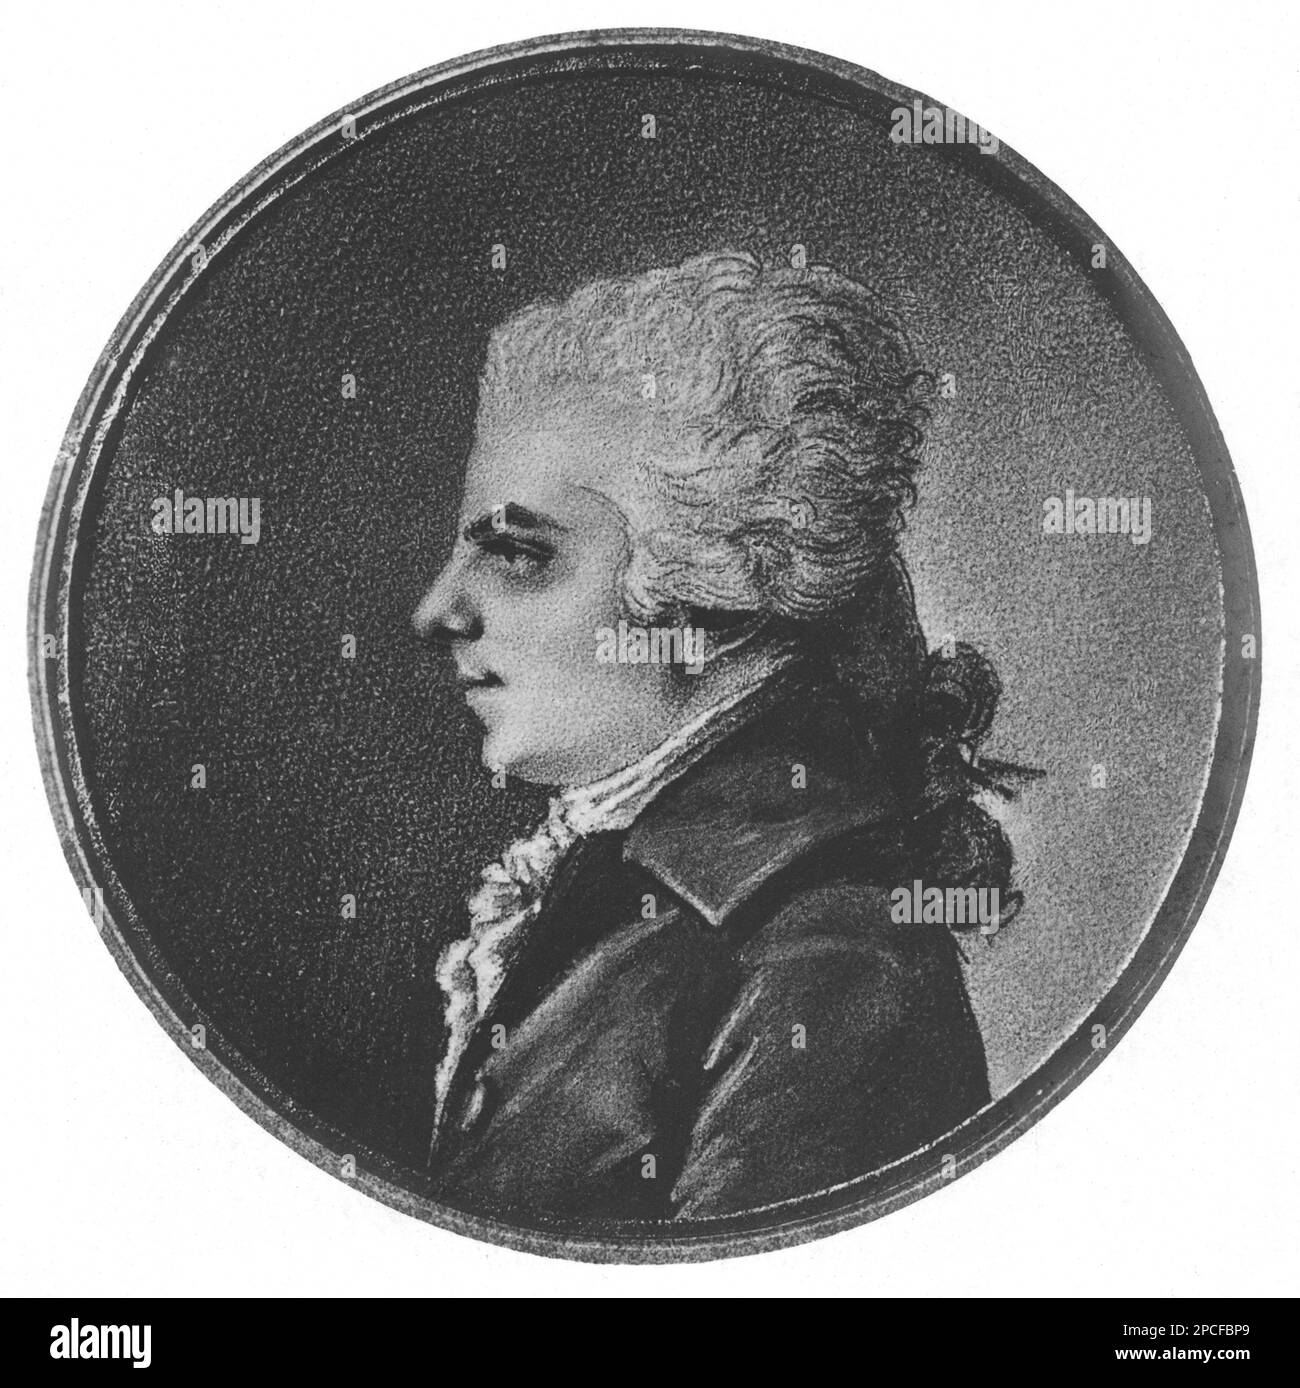 Il celebre compositore austriaco WOLFANG AMADEUS MOZART ( 1756 - 1791 ) - COMPOSITORE - OPERA LIRICA - CLASSICA - CLASSICA - RITRATTO - ritmo - MUSICA - Musica - profilo - parrucca - parrucca -- -- ARCHIVIO GBB Foto Stock